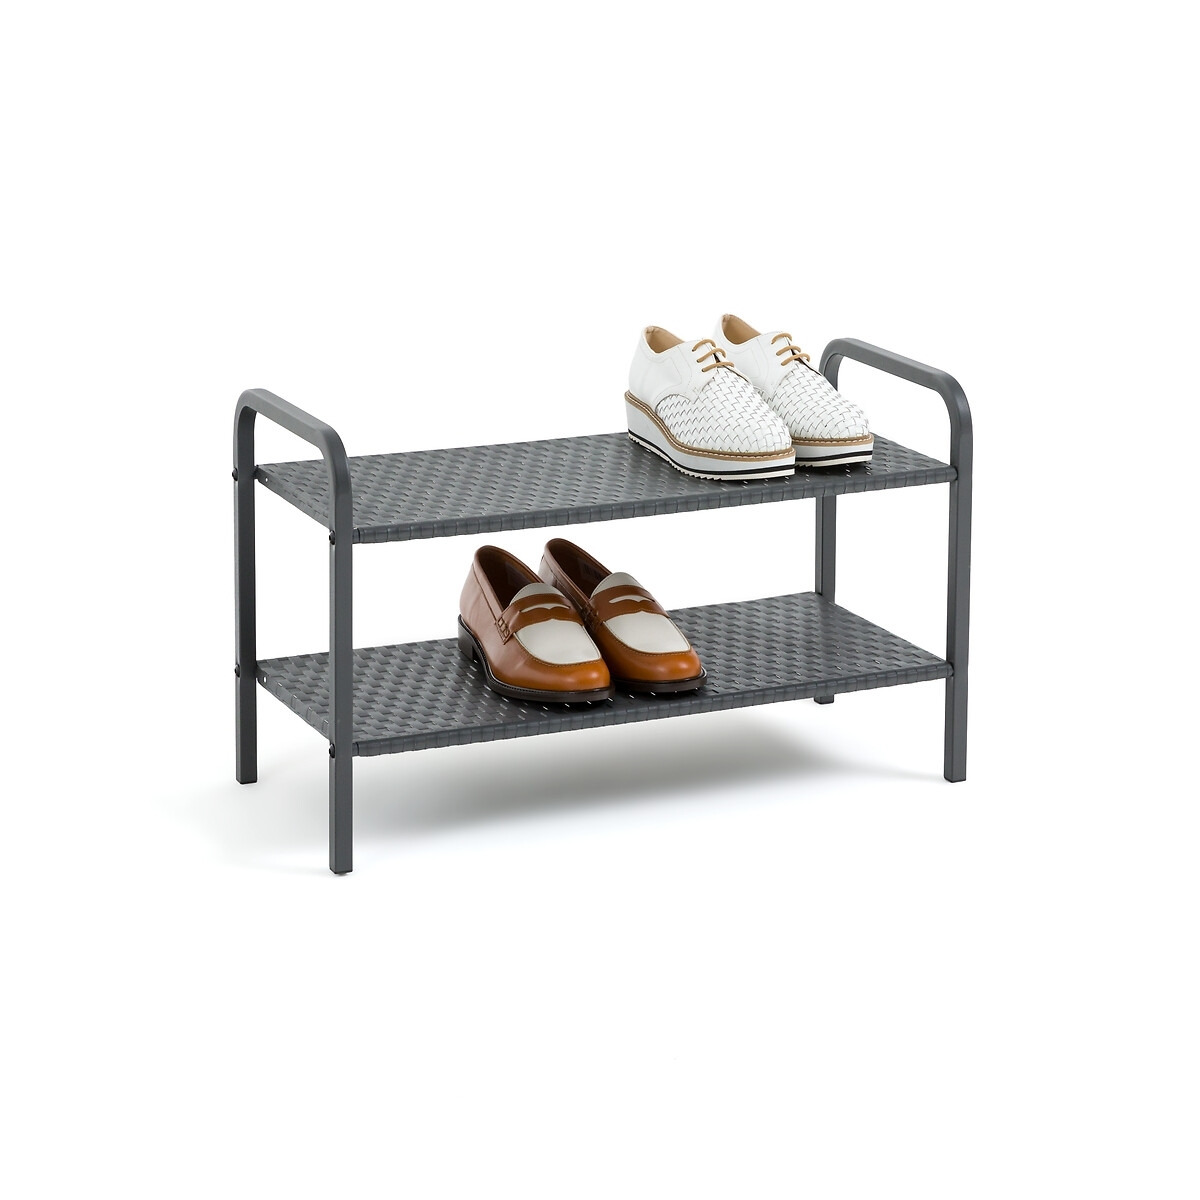 Adhos Metal Shoe Storage Shelves - image 1